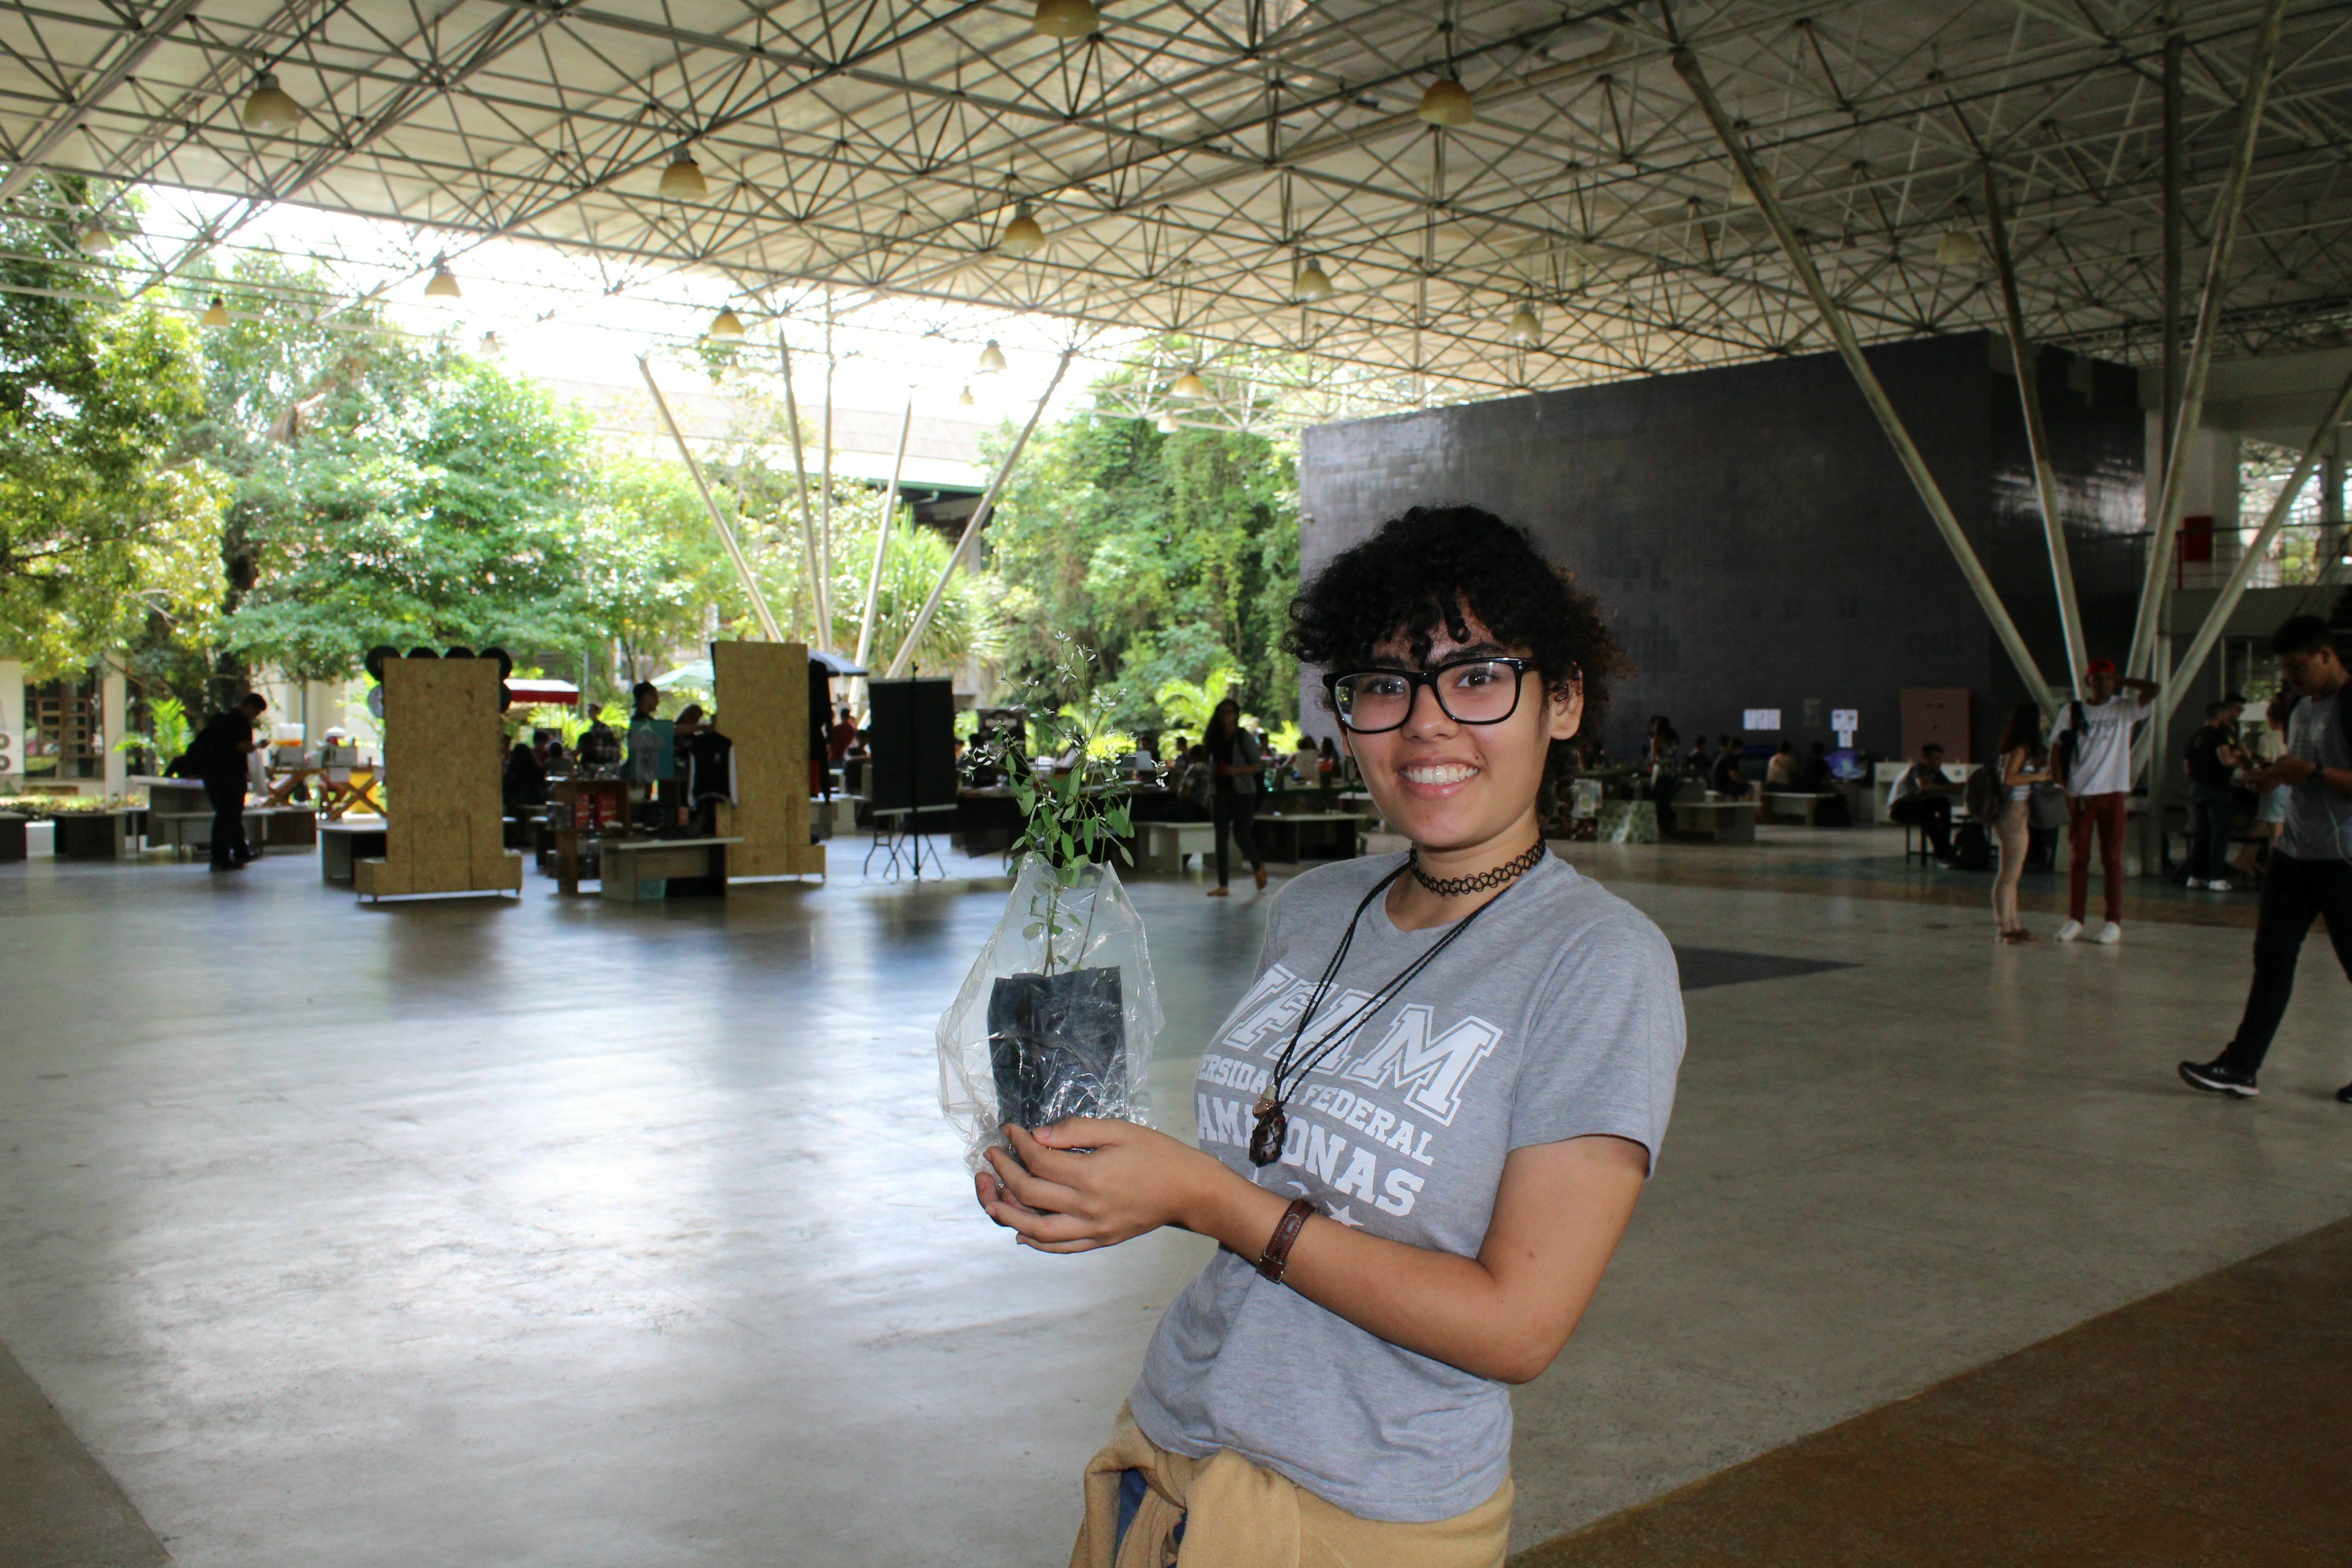 Distribuição de mudas - aluna do curso de Ciências Naturais, Karoline Prado, participou do evento e levou muda de "onze horas" para casa